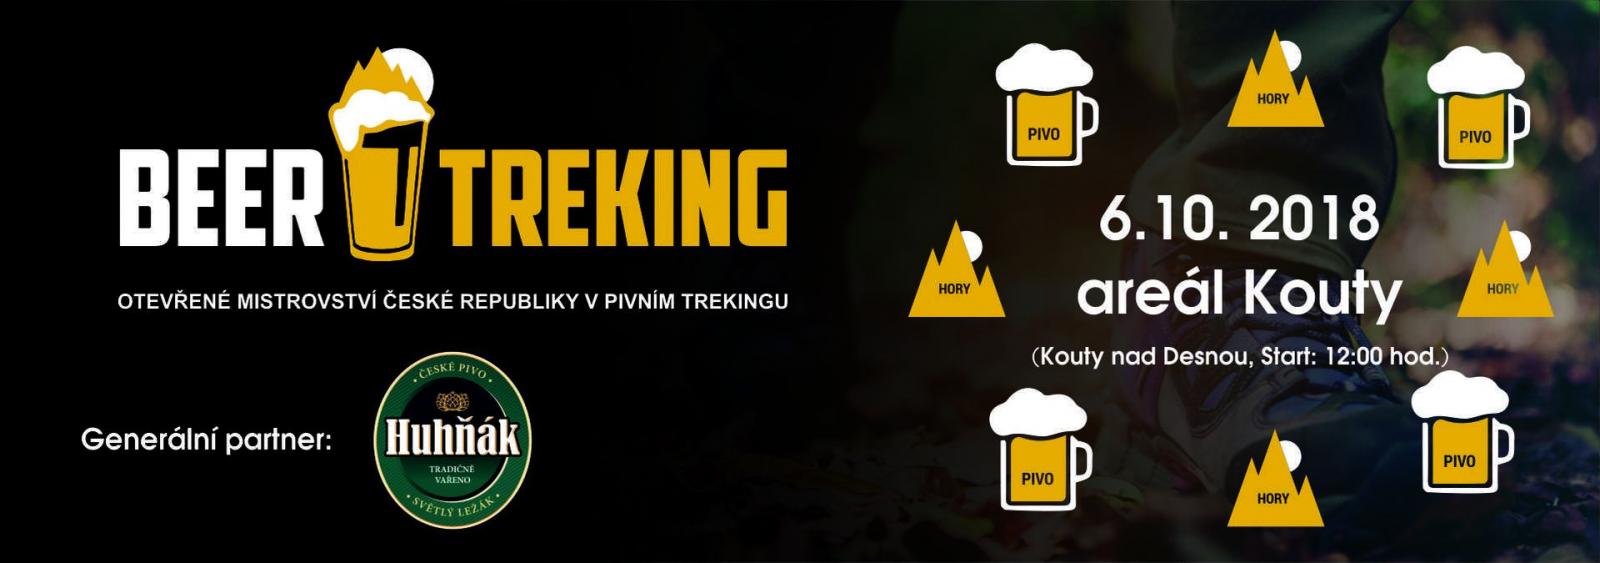 Letošní Beer treking odstartuje 6.10.2018!